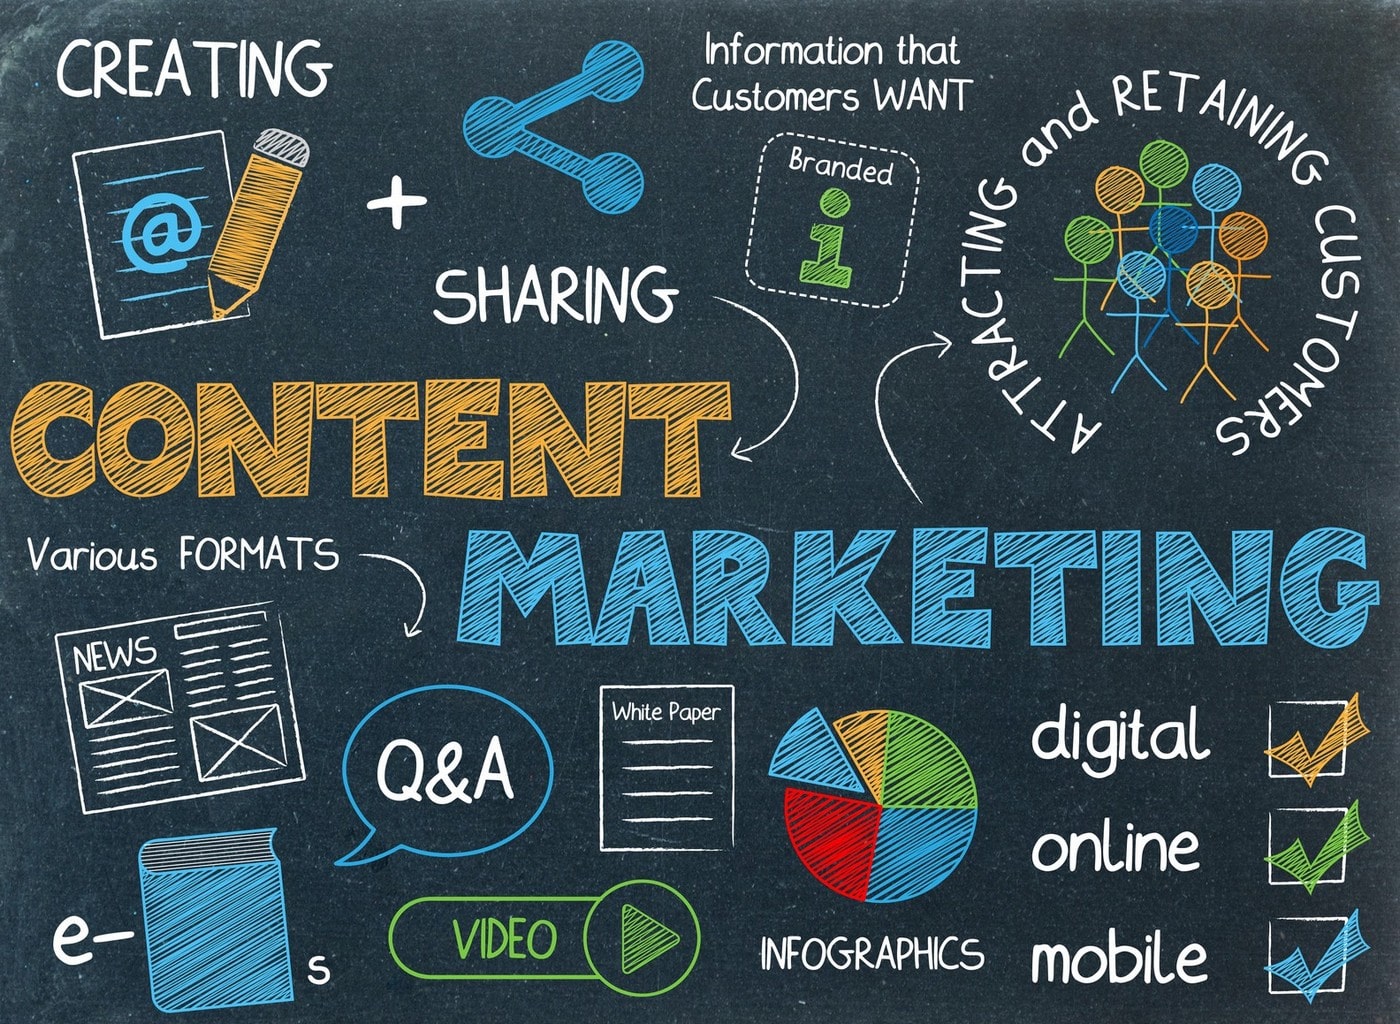 Content - Yếu tố hàng đầu trong Digital Marketing